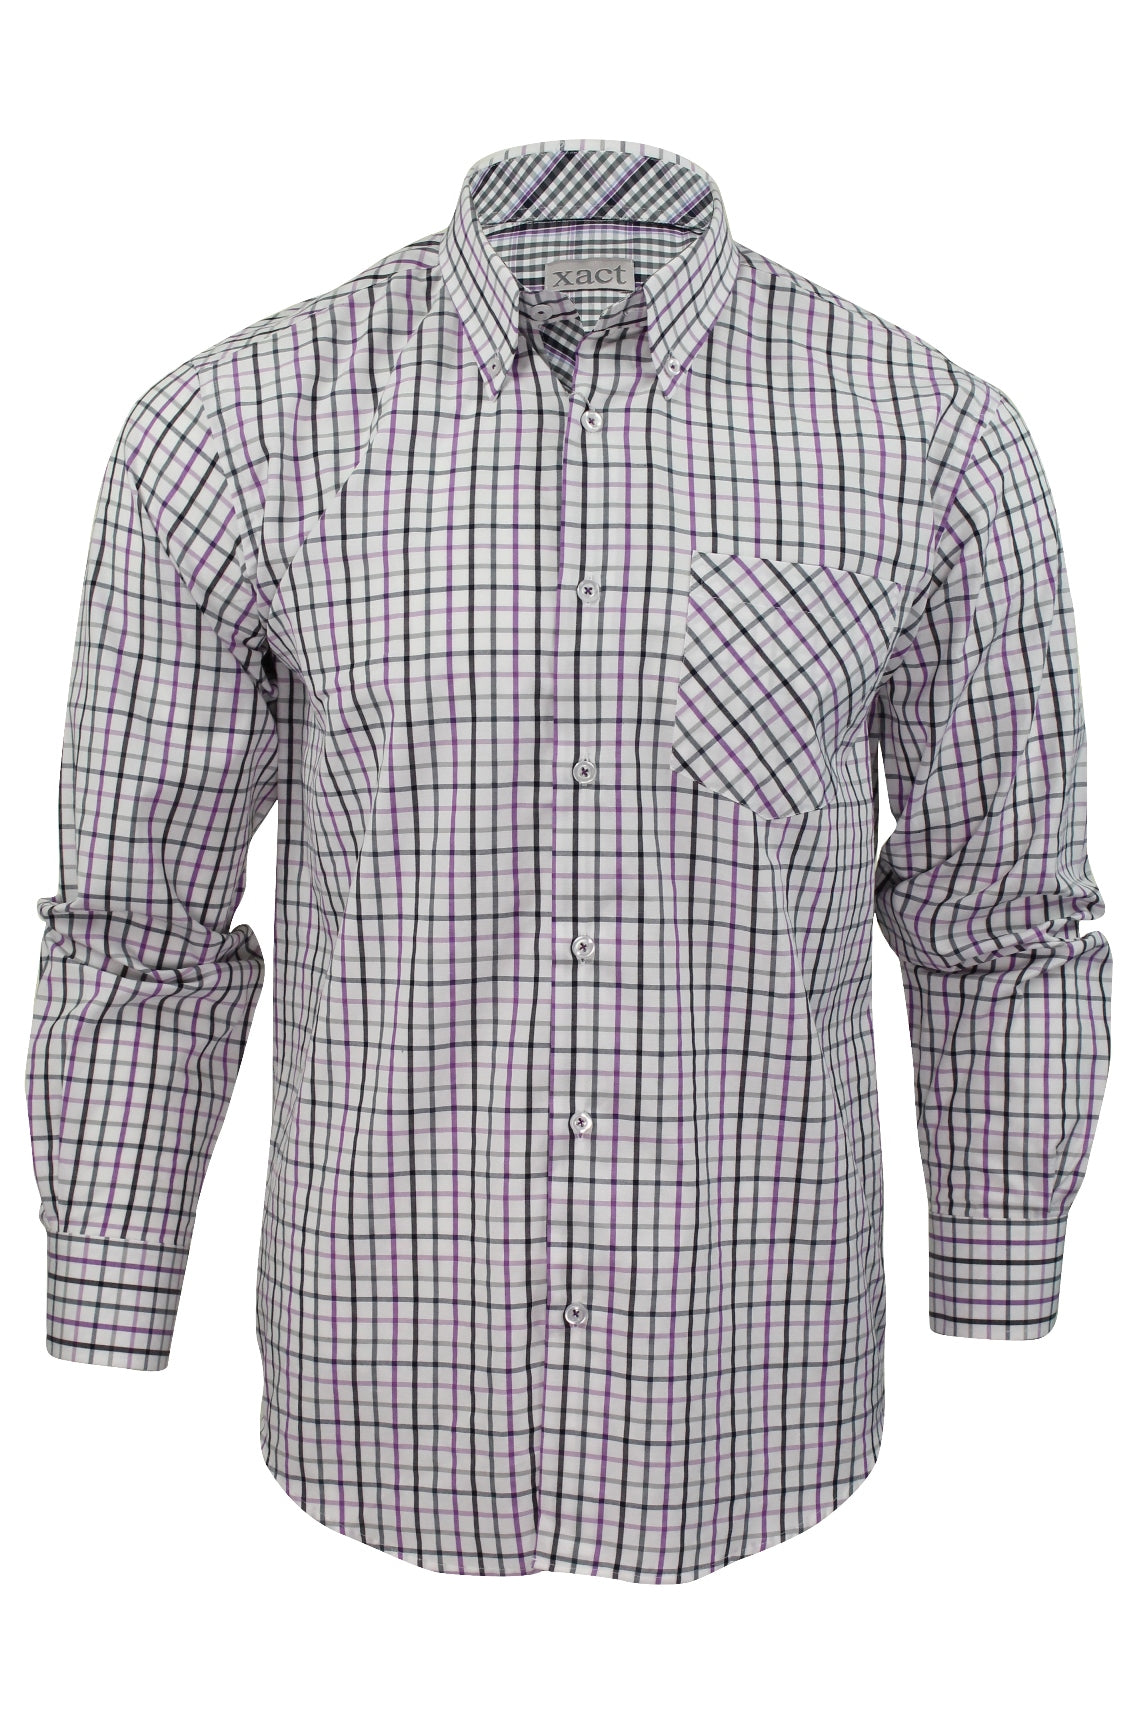 Mens Long Sleeved Check Shirt by Xact Clothing-Main Image